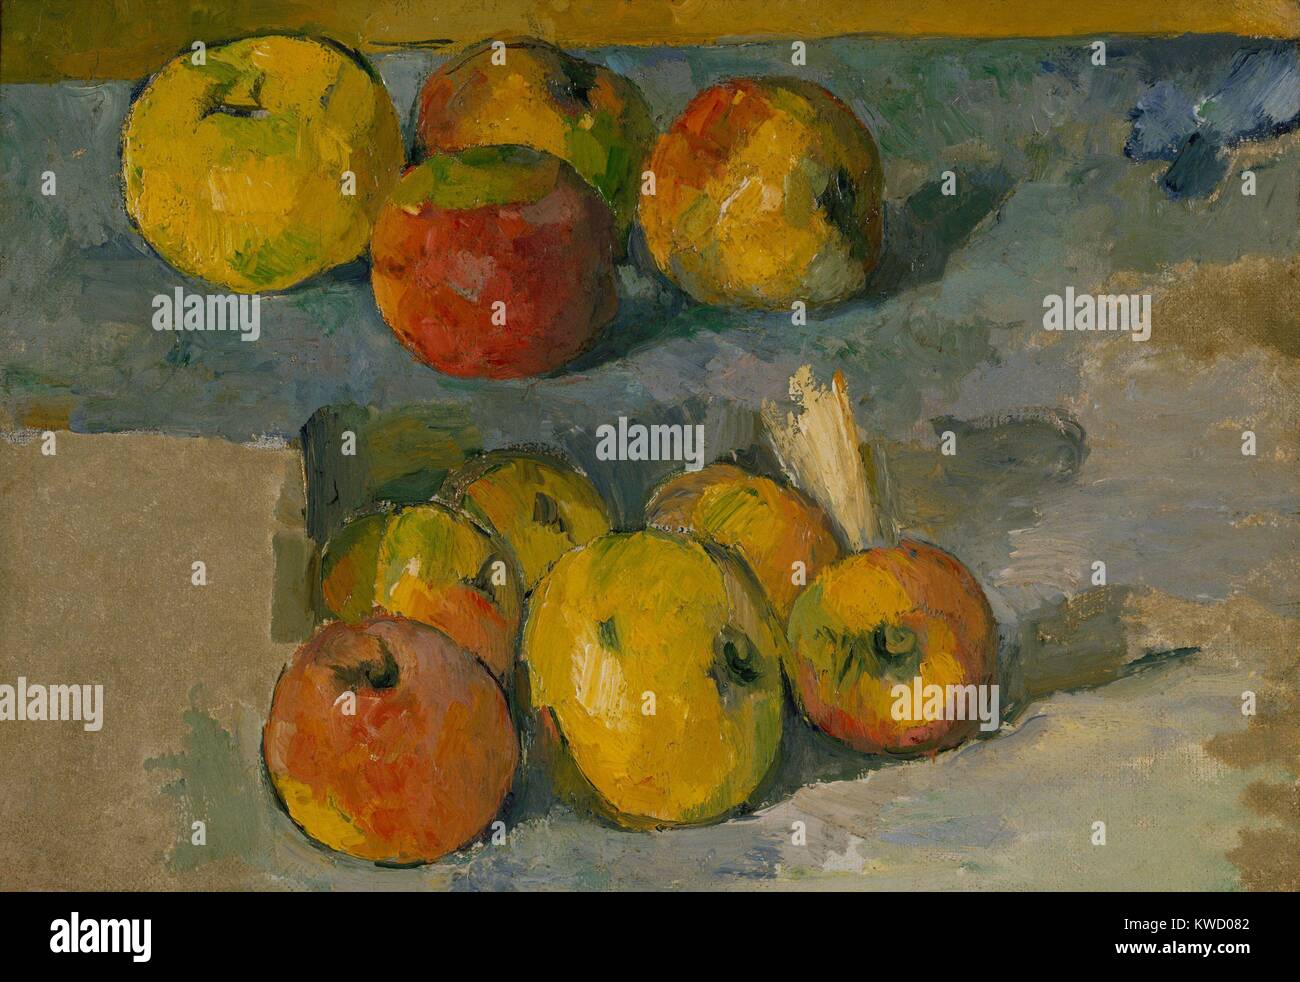 Les pommes, de Paul Cézanne, 1878-1879 ou 1883-87, le français postimpressionnistes peinture, huile sur toile. Le courtier de Cézanne, Ambroise Vollard, vendu cette image sur le peintre Edouard Vuillard, en échange d'un des propres œuvres de l'artiste (BSLOC 2017 5 22) Banque D'Images